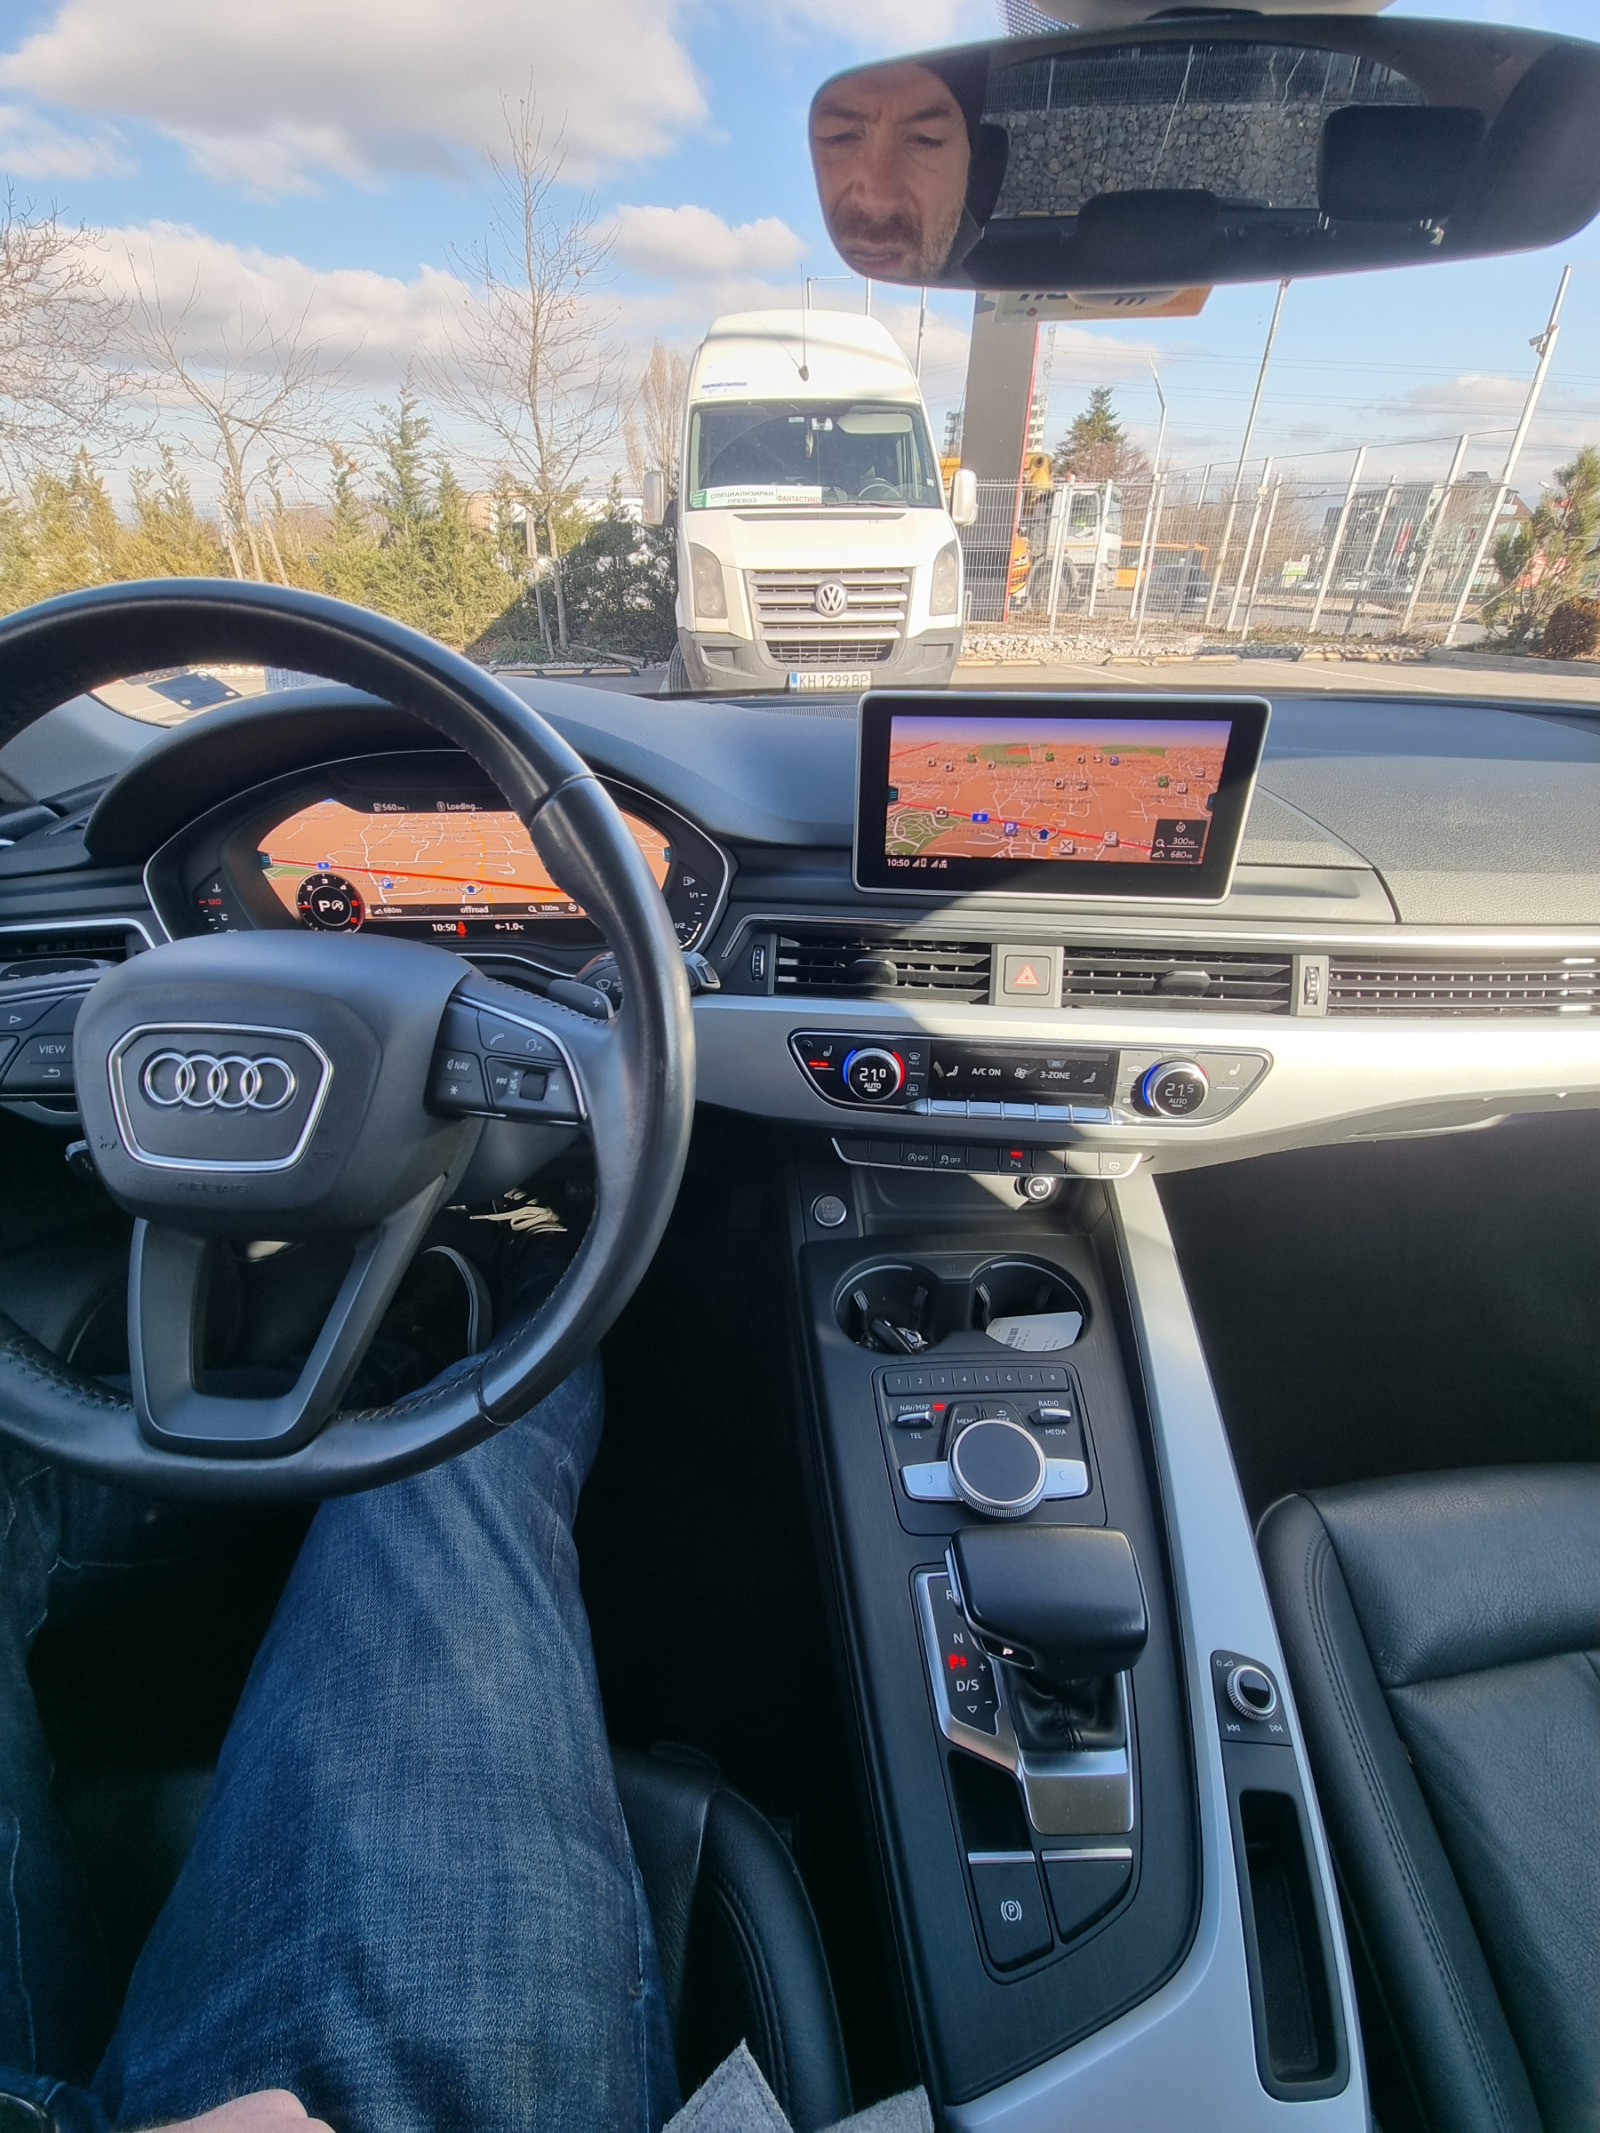 Audi A4 2.0 tdi 103000km - изображение 1